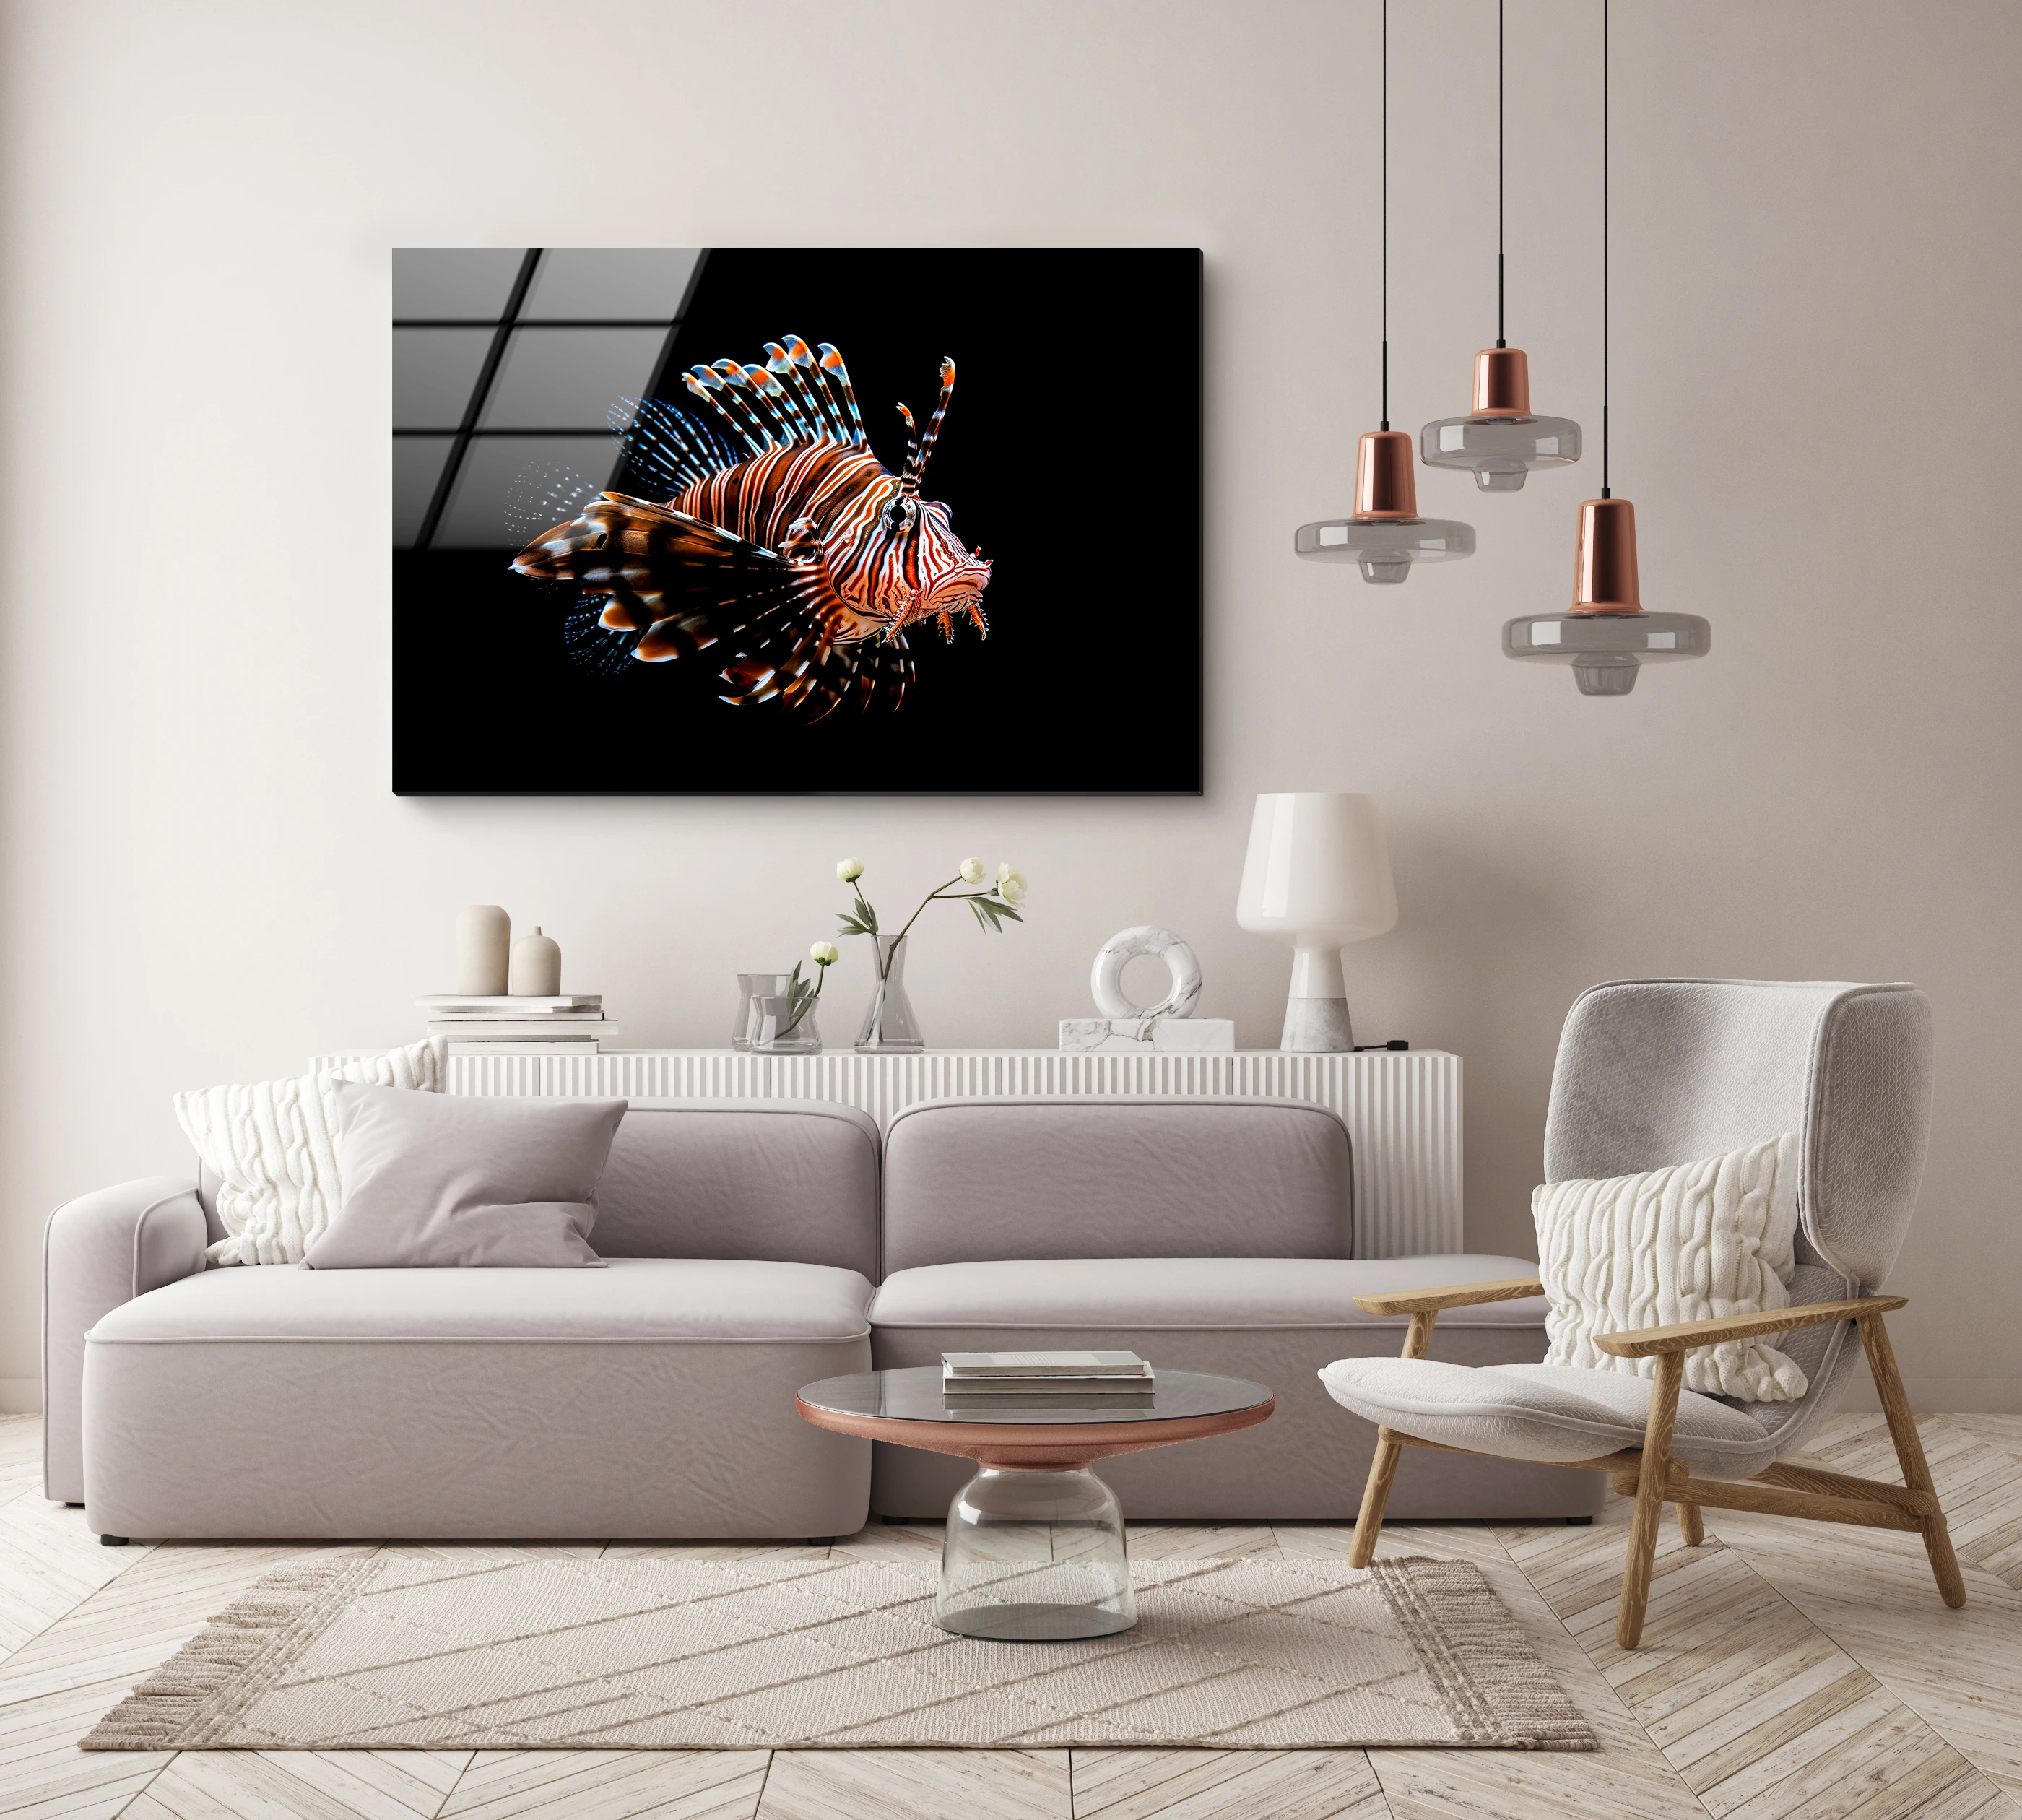 

Ультрапрозрачное современное простое бескаркасное закаленное стекло 90*60 см художественное оформление ресторана дивана спинки стены глубоководная рыба декоративная живопись